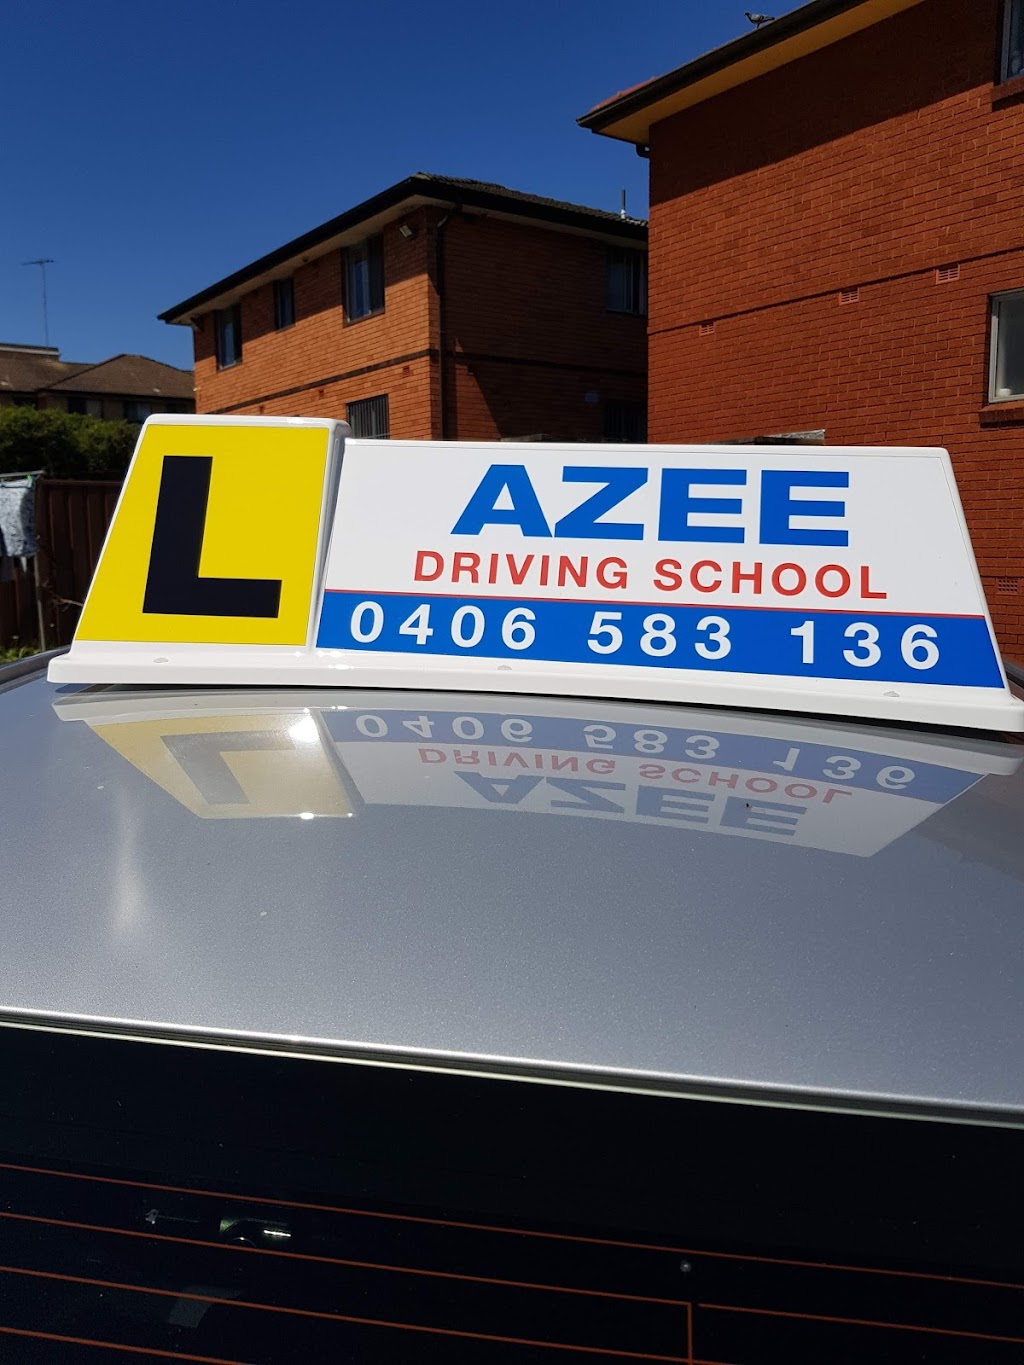 Azee driving school | 223 Lakemba St, Lakemba NSW 2195, Australia | Phone: 0406 583 136